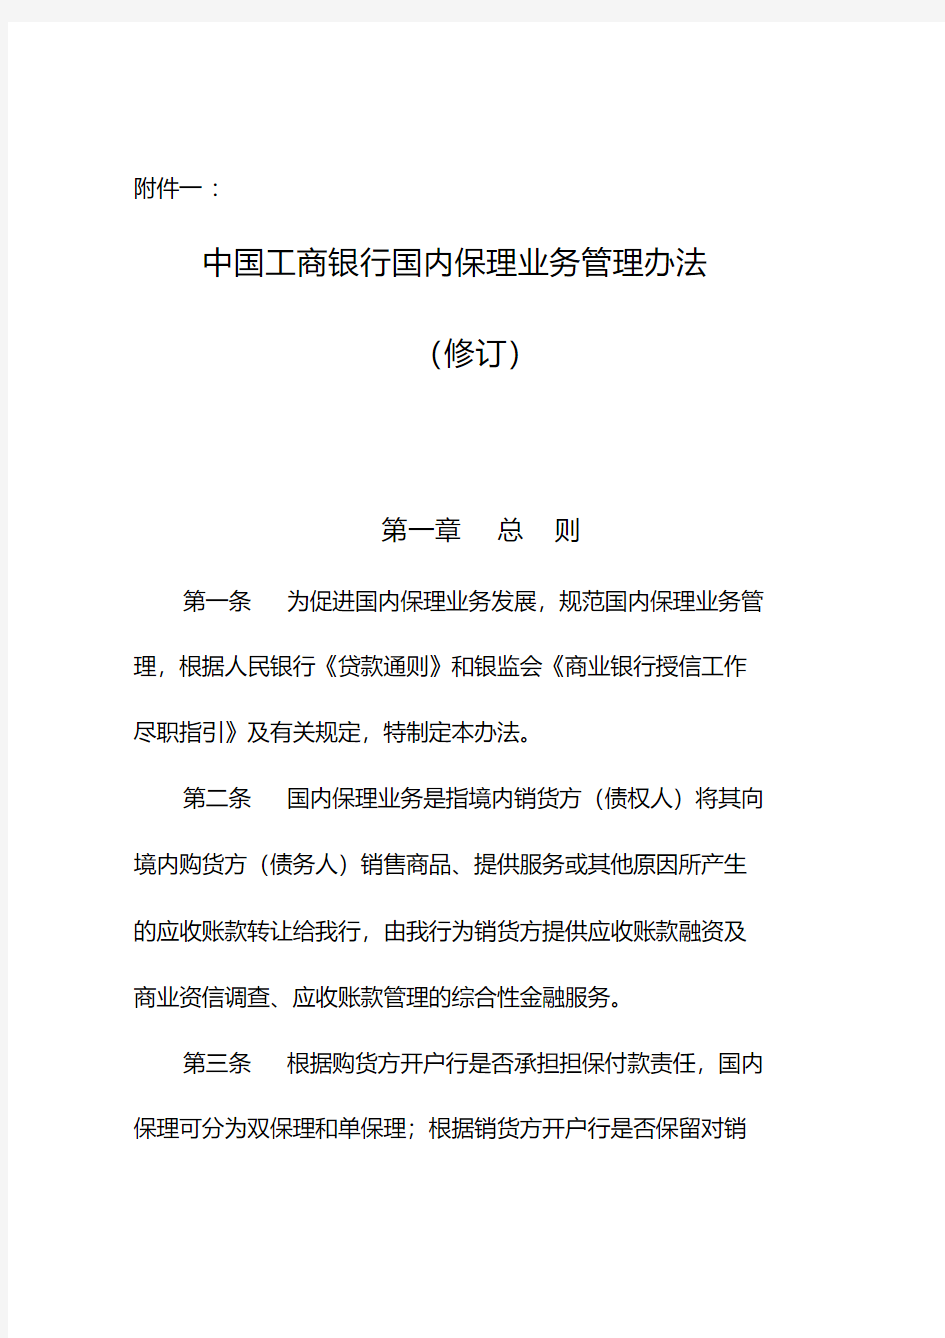 中国工商银行国内保理业务管理办法规定